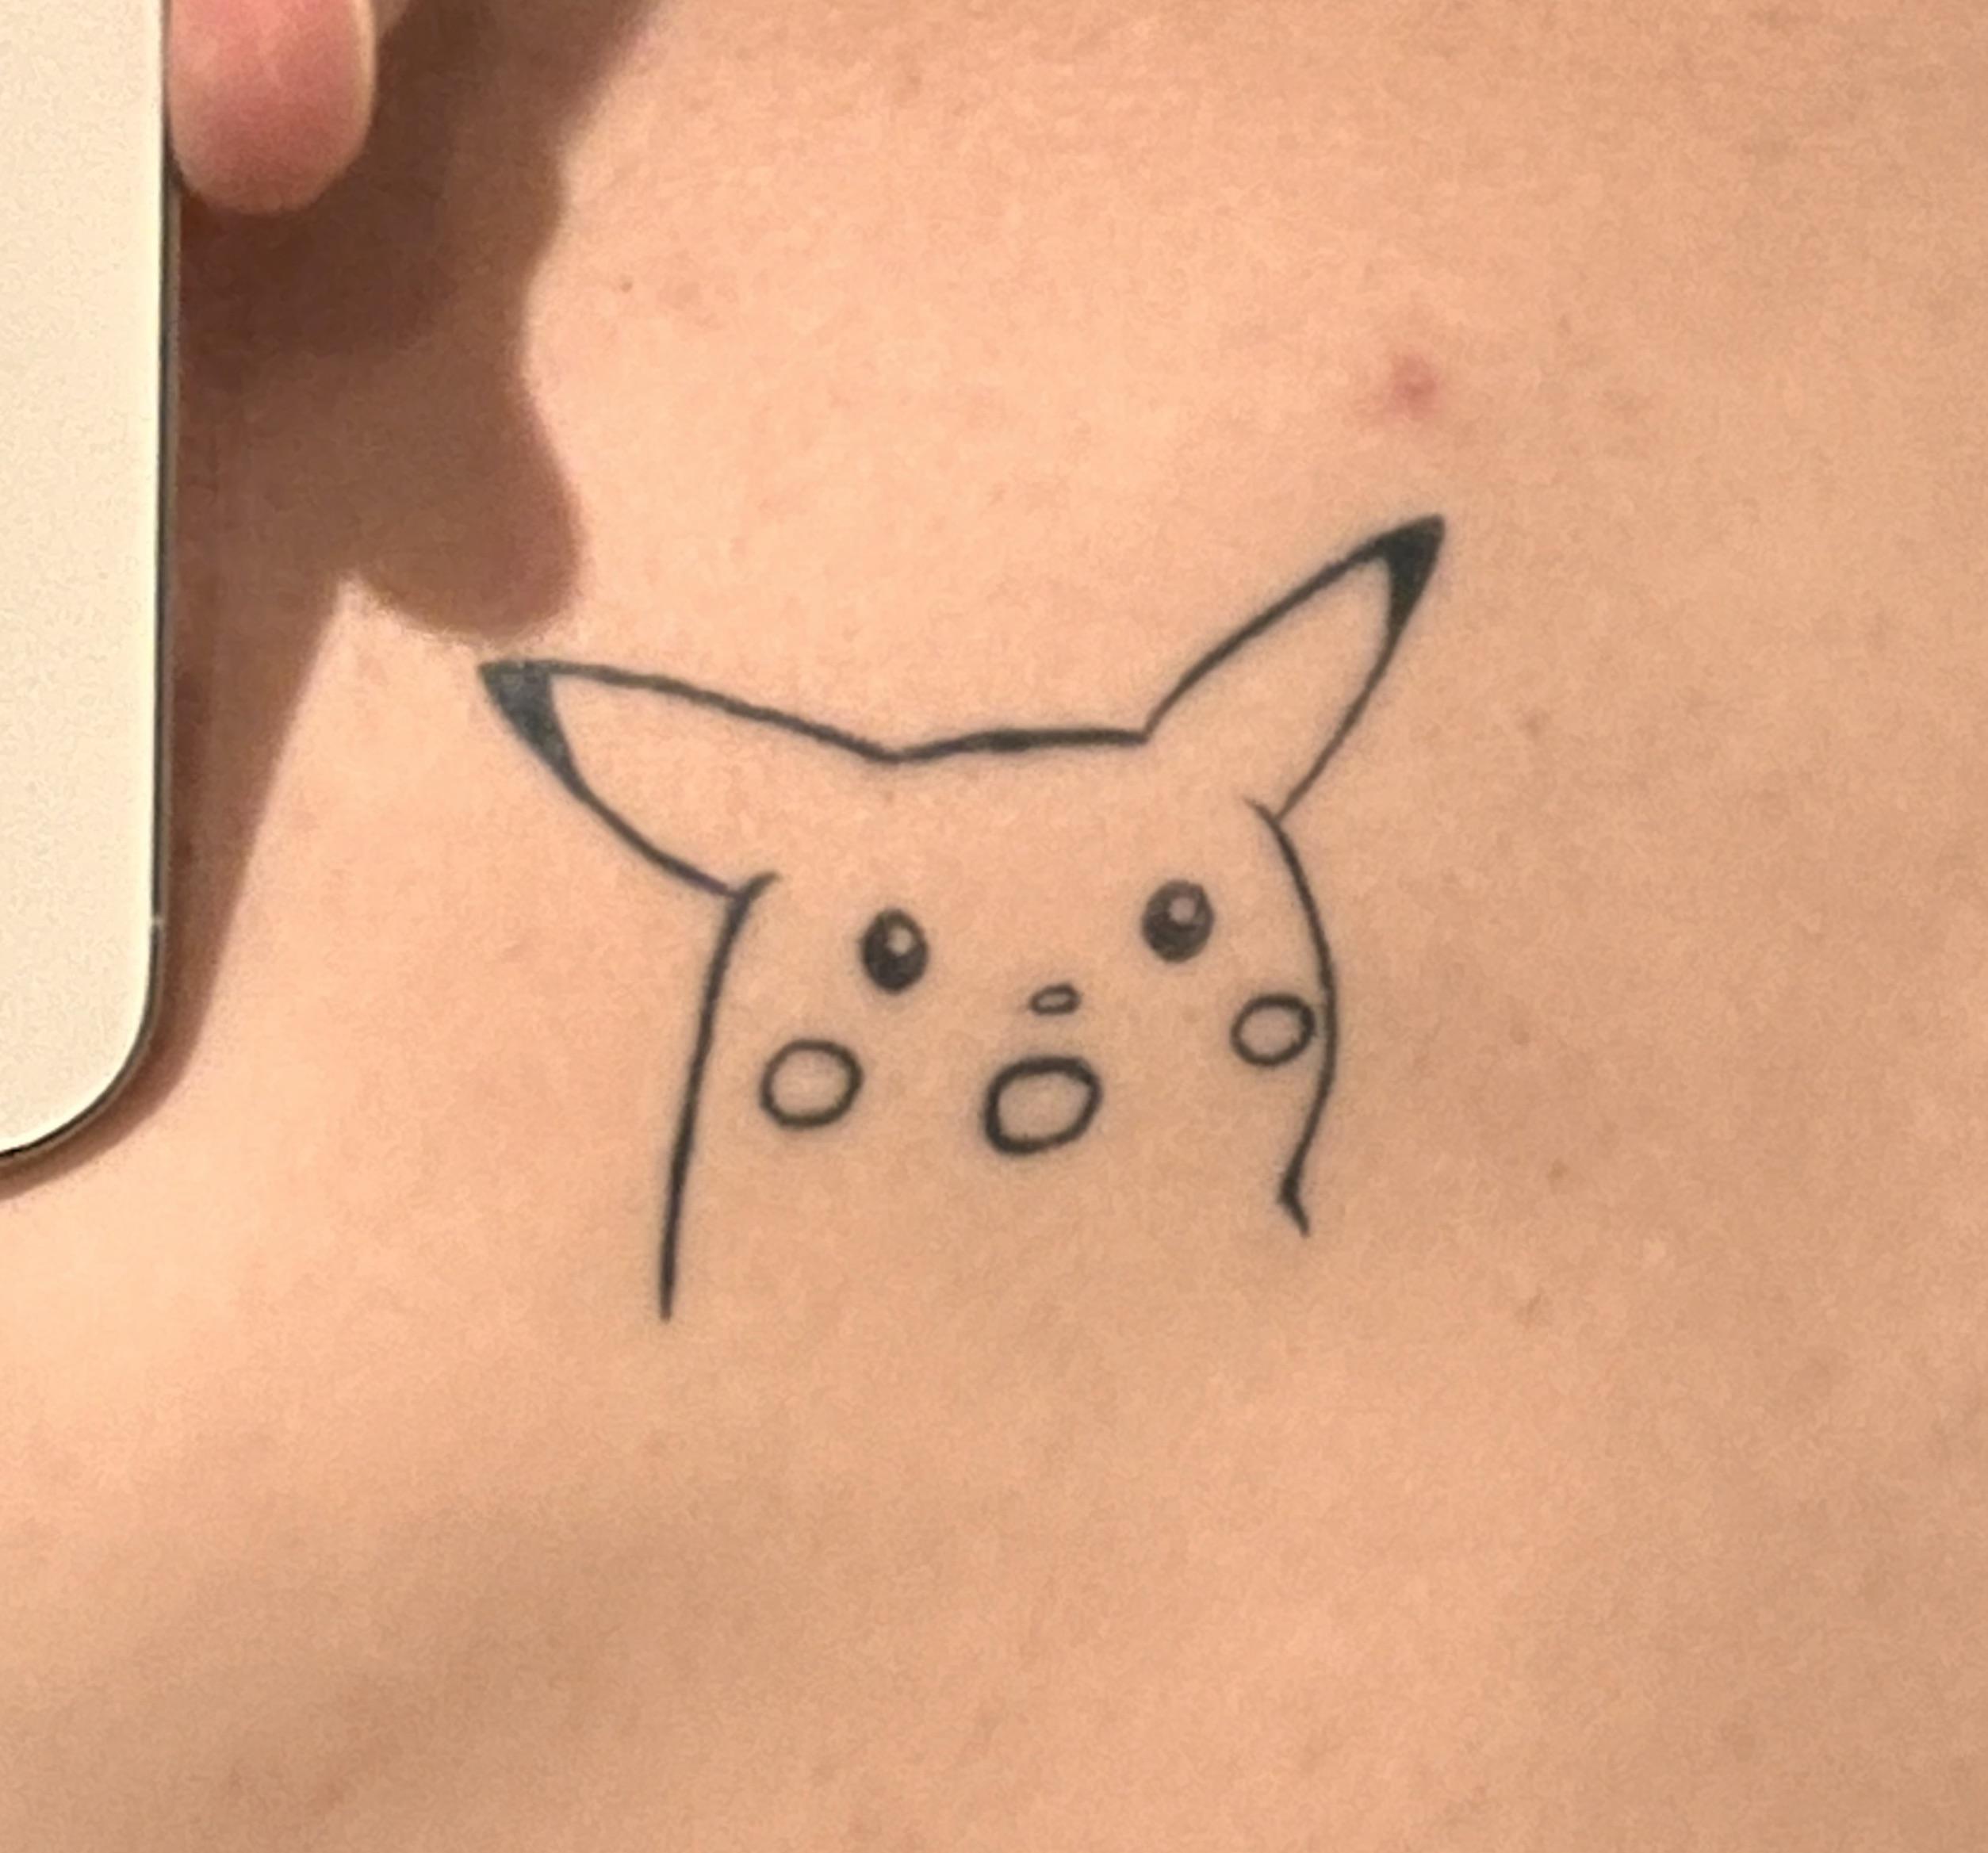 Victini pokemon tattoo by AntoniettaArnoneArts on DeviantArt